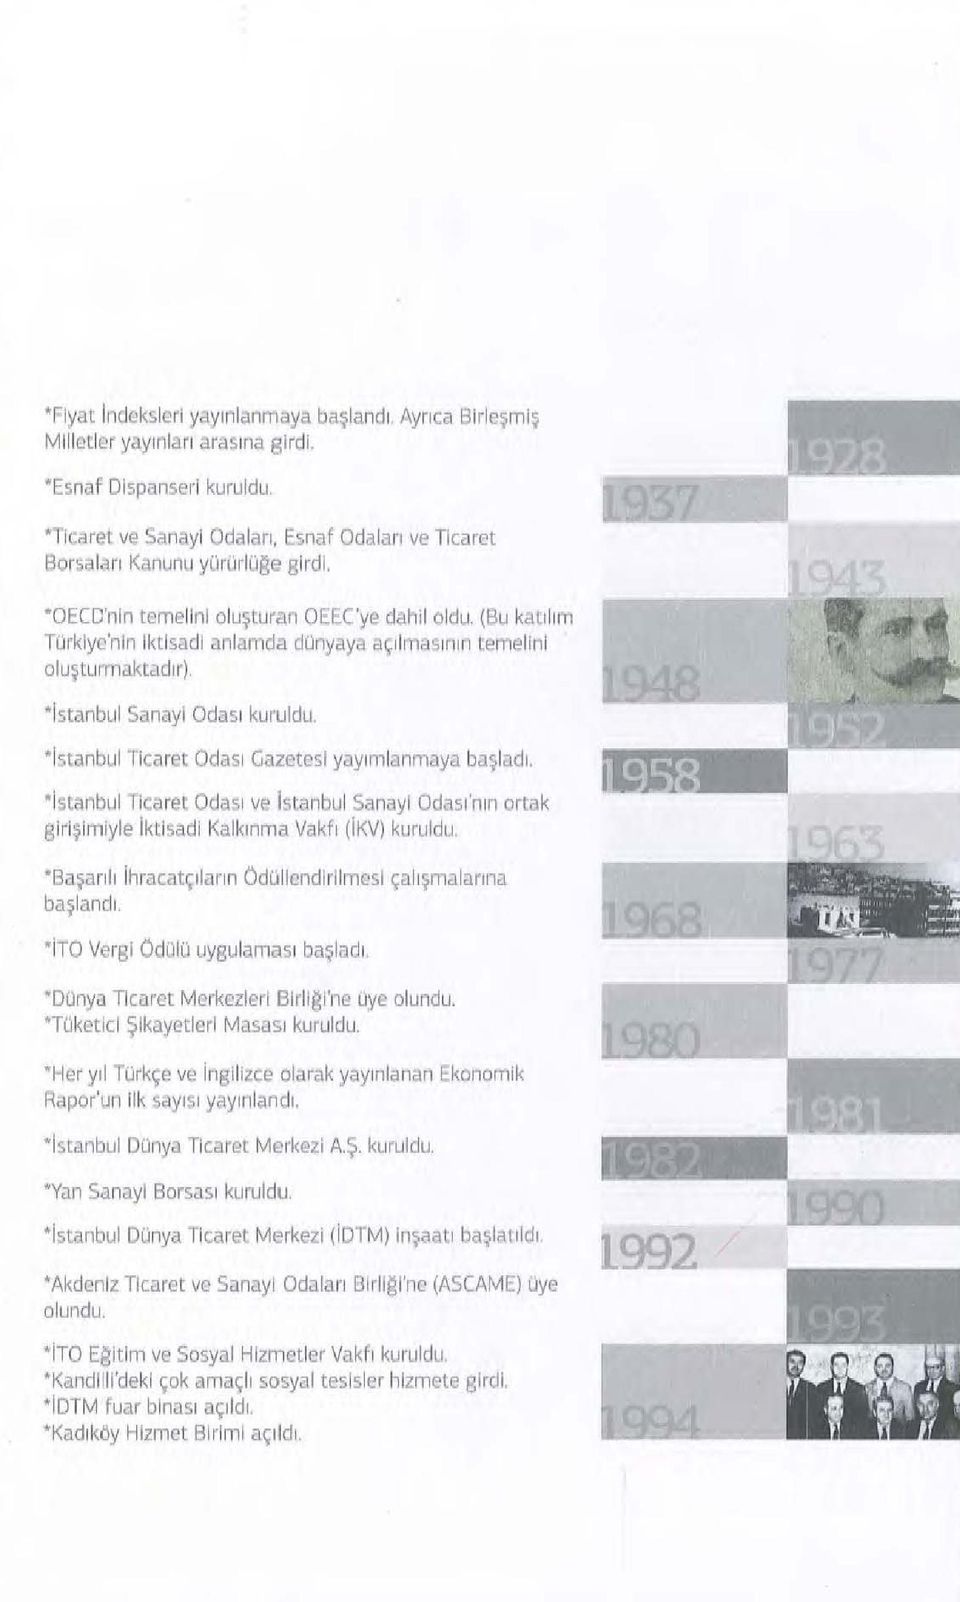 (1:3u katıliltı TOrkiye'nin Iktisadi anlamda donyaya açılmasırıın temelini o luştunnaktadır). Istanbul Sanayi Odası kuruldu. Istanbul Ticaret Odası Gazetesi yayını lanmaya başladı.